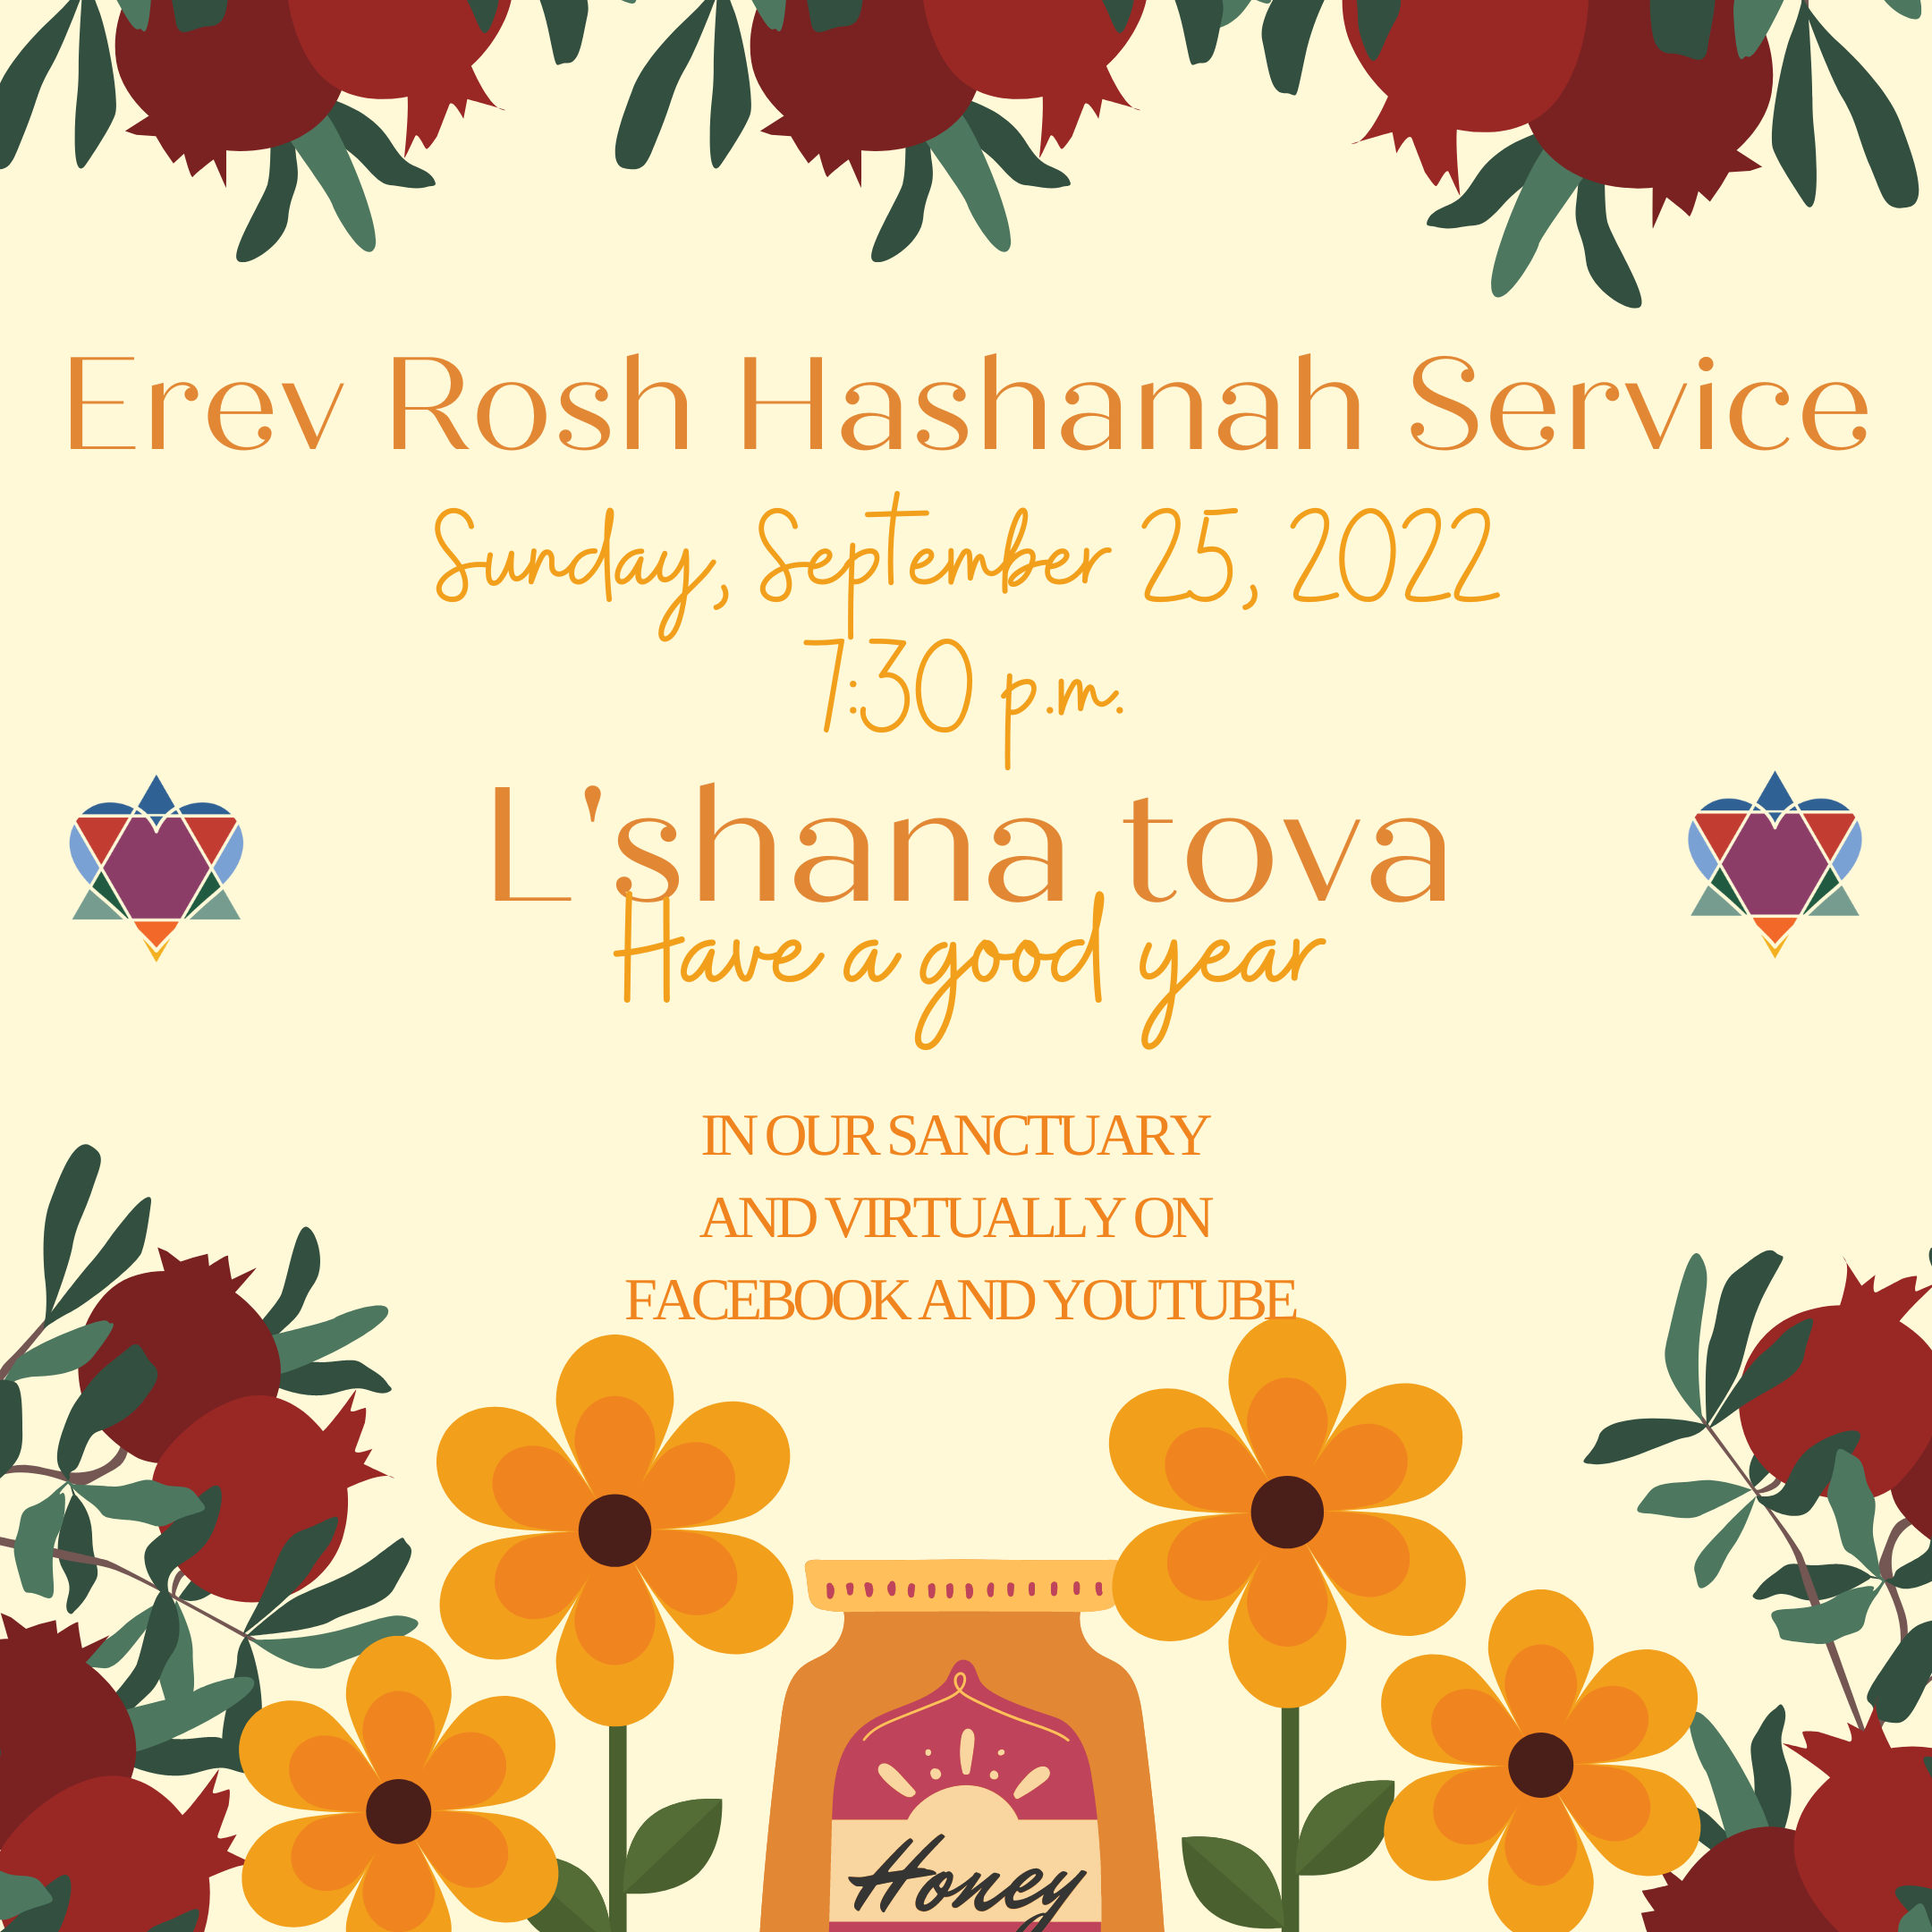 EREV ROSH HASHANAH SERVICE